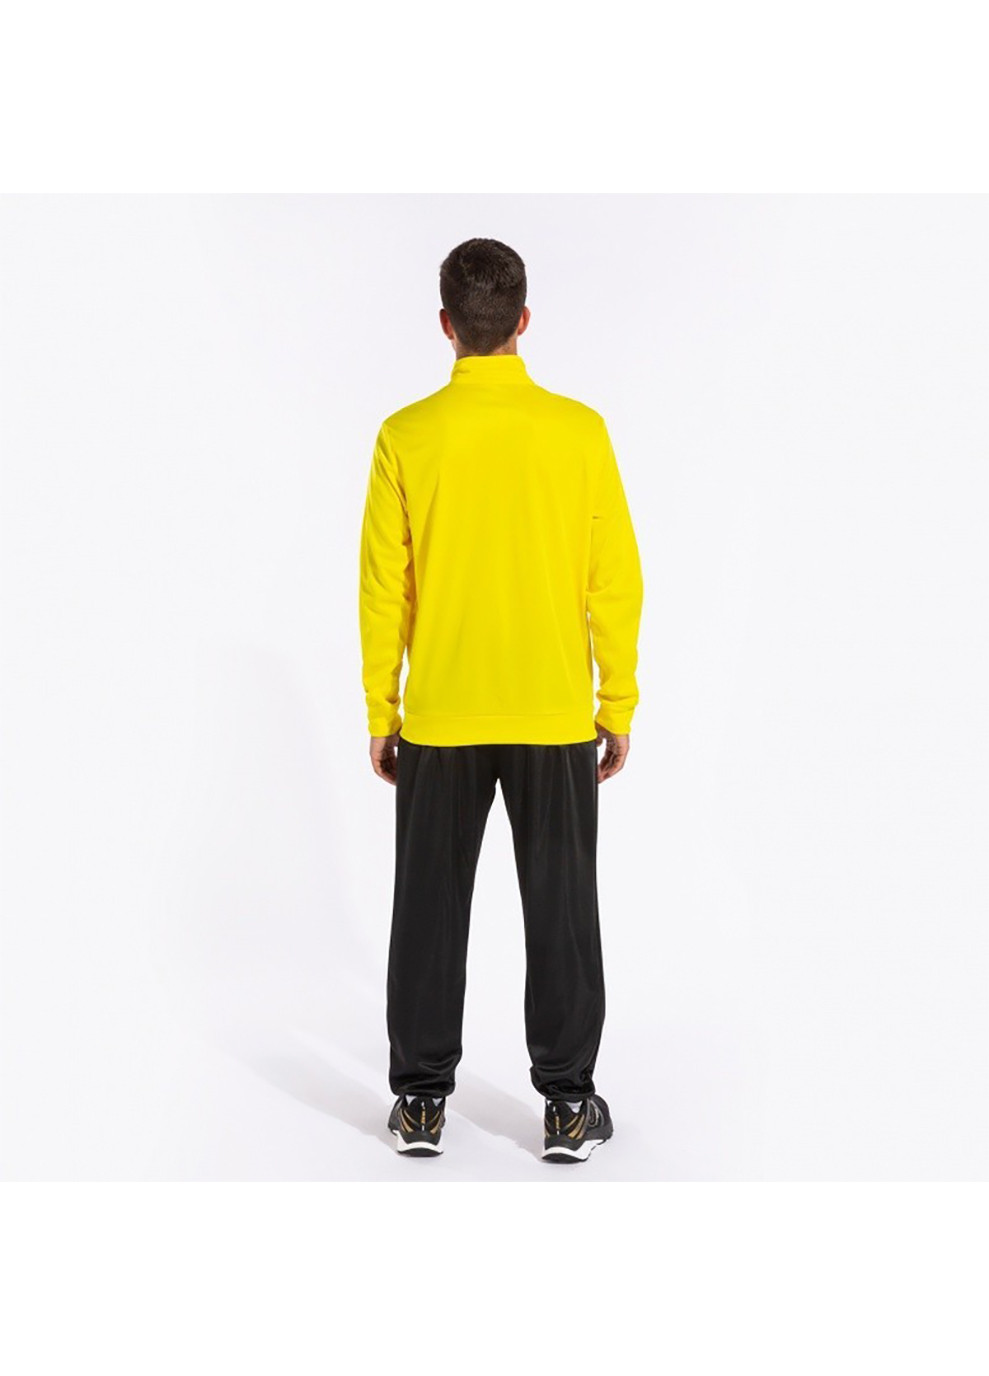 Чоловічий спортивний костюм COLUMBUS TRACKSUIT жовтий,чорний Joma (260633524)